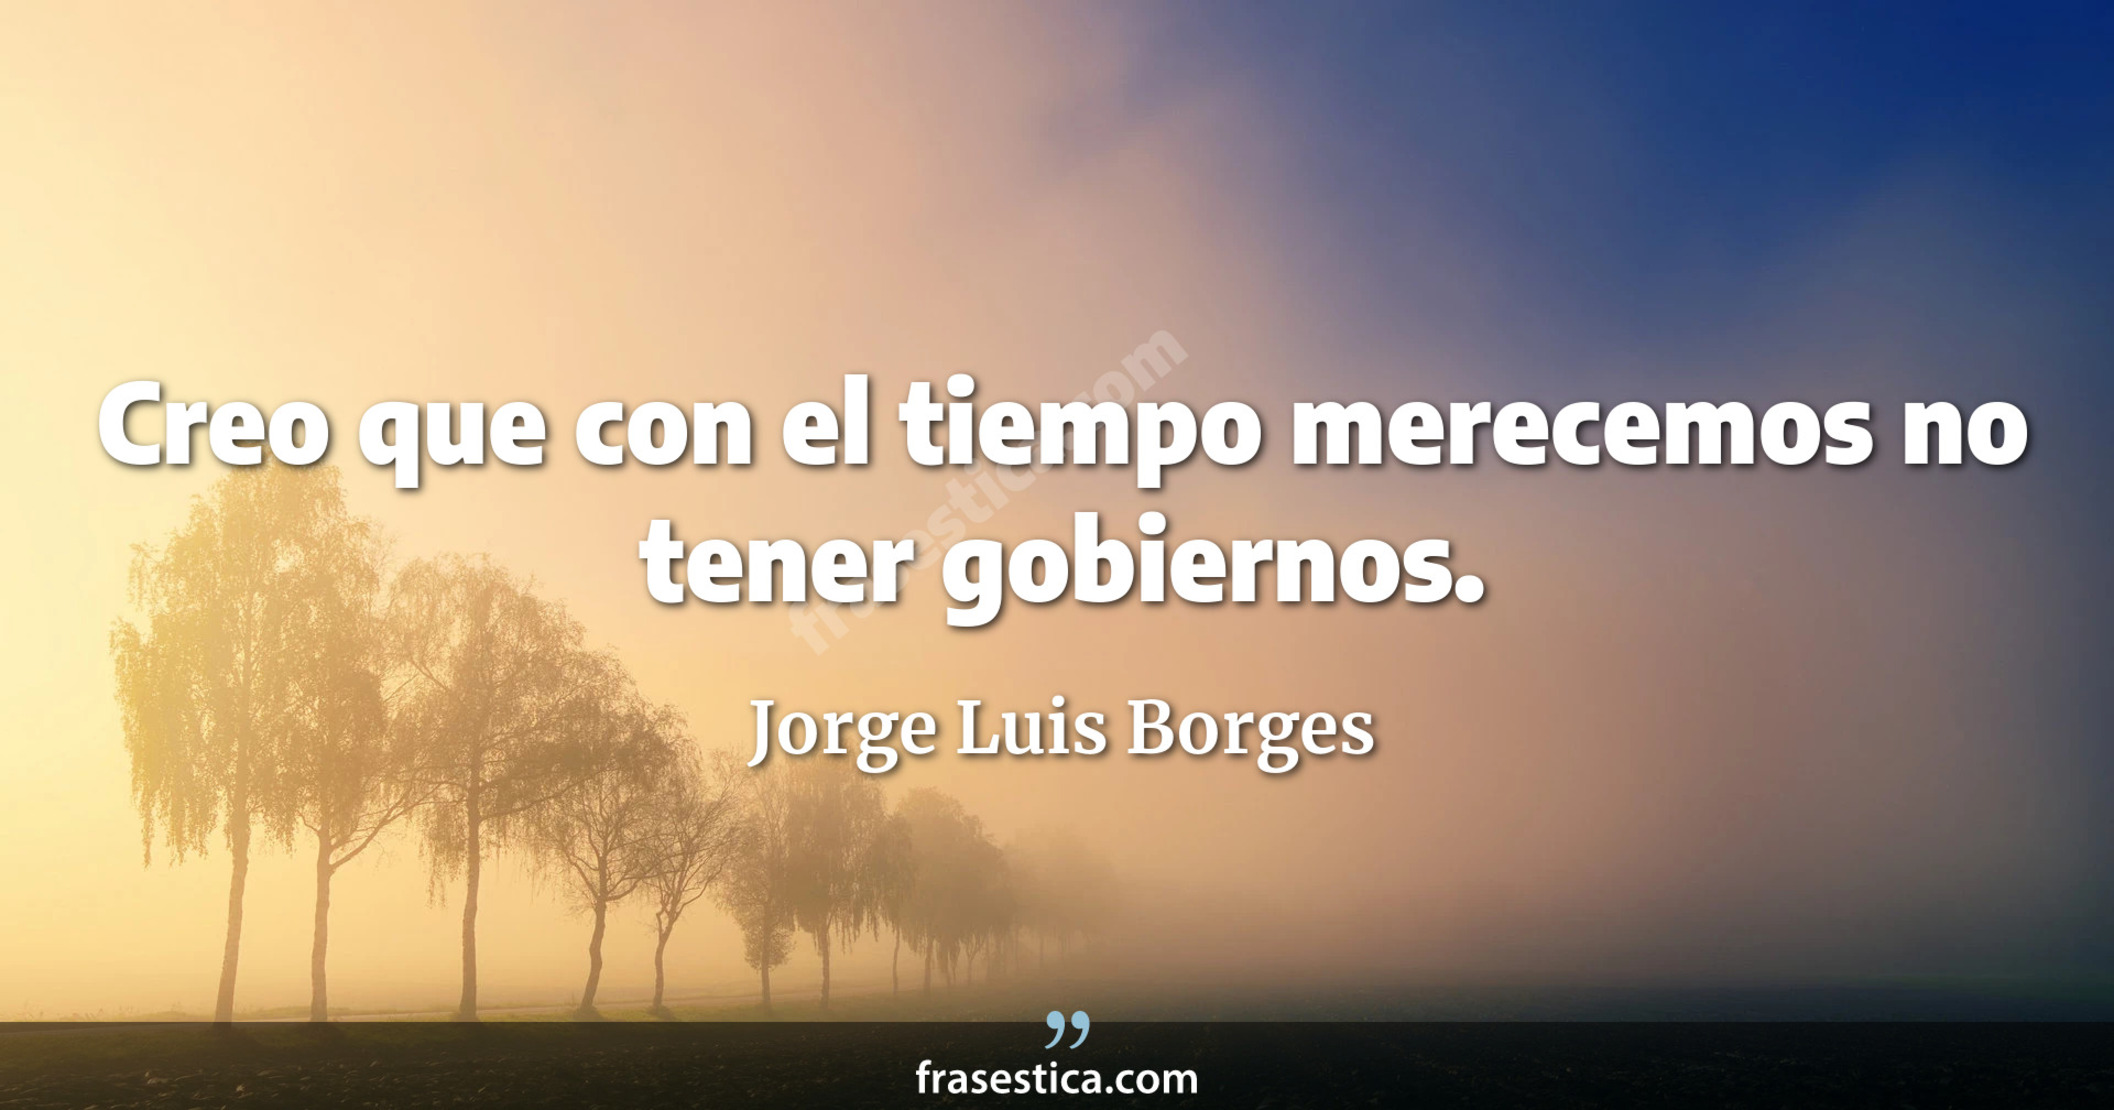 Creo que con el tiempo merecemos no tener gobiernos. - Jorge Luis Borges